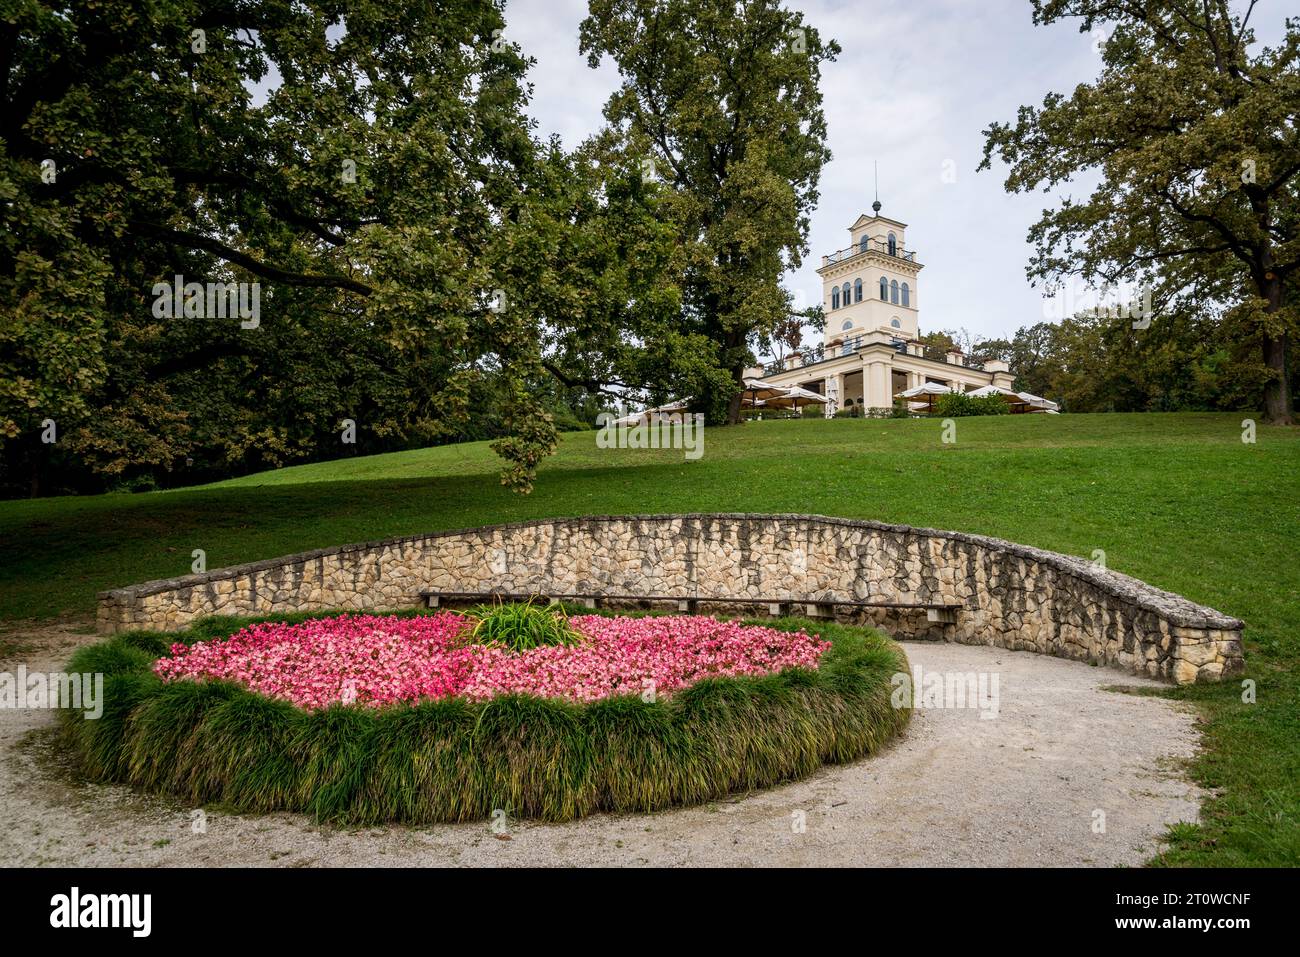 Posto a sedere semicircolare in pietra accanto all'esposizione dei fiori, Maksimir Park, il più antico parco pubblico, risalente all'inizio del XIX secolo, Zagabria, Croazia Foto Stock